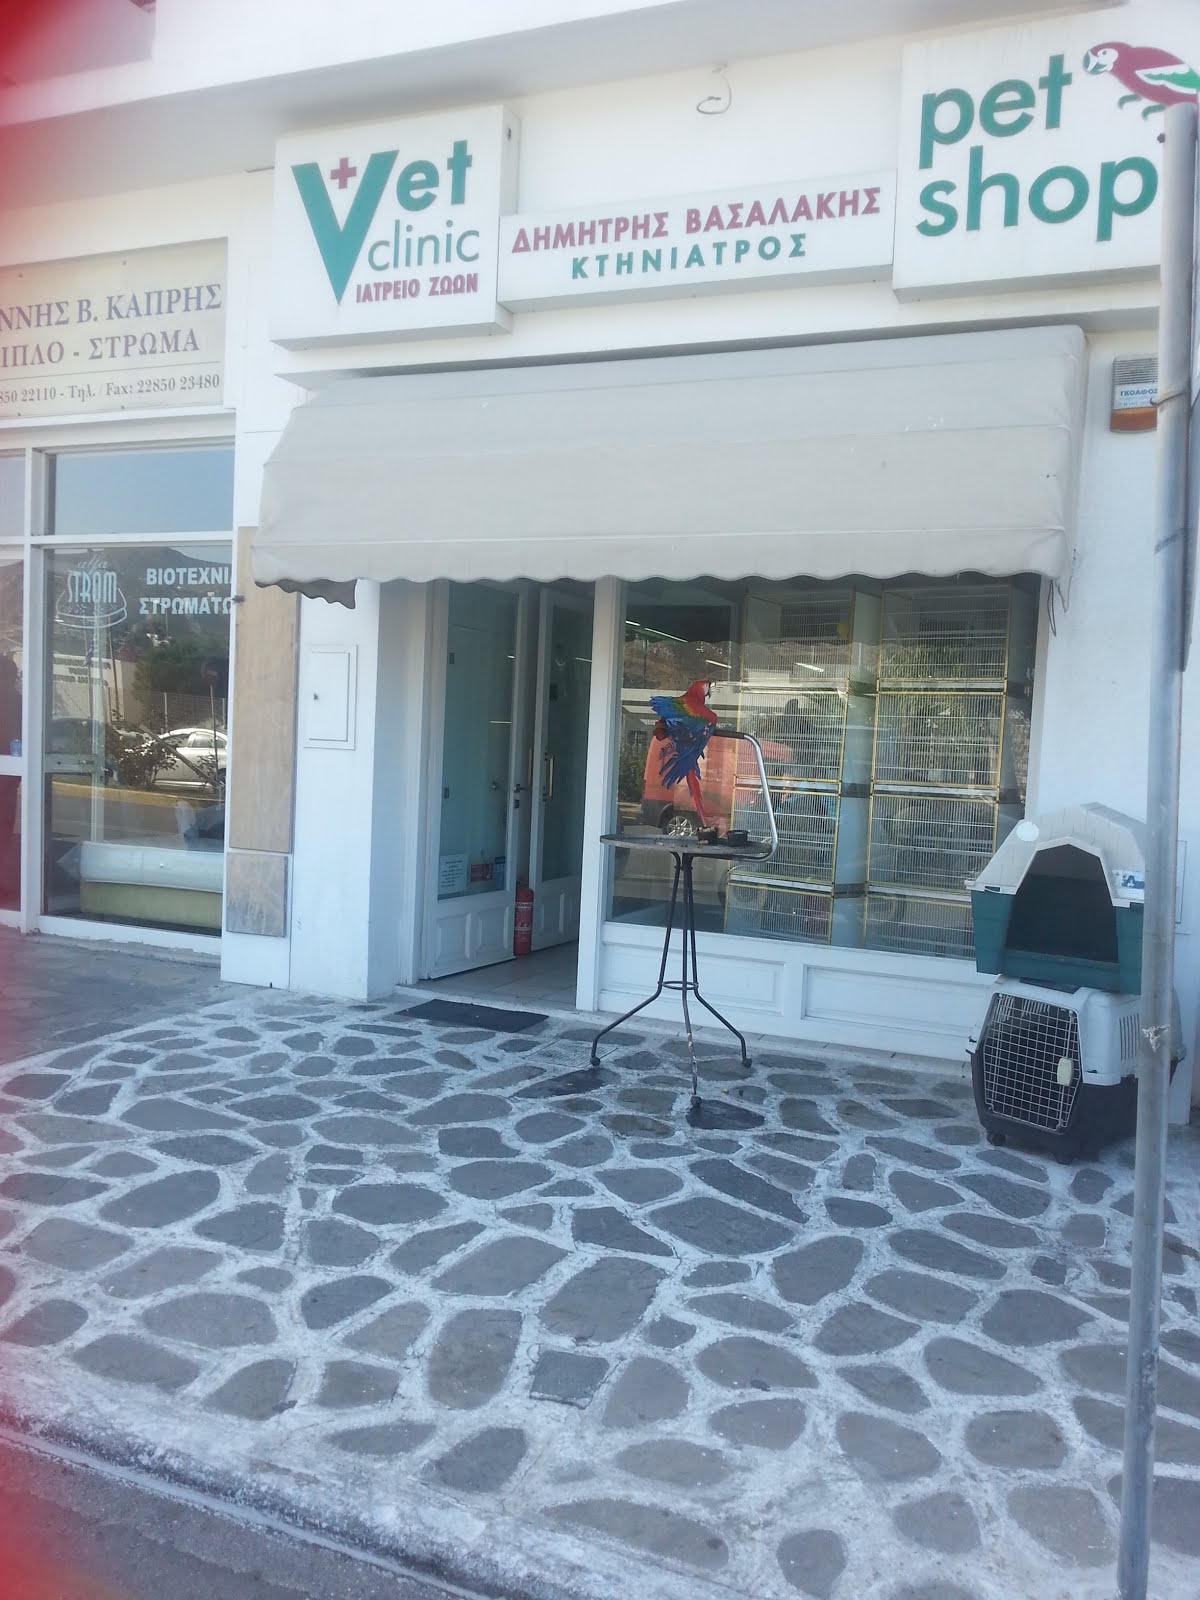 Pet Shop Vassalakis